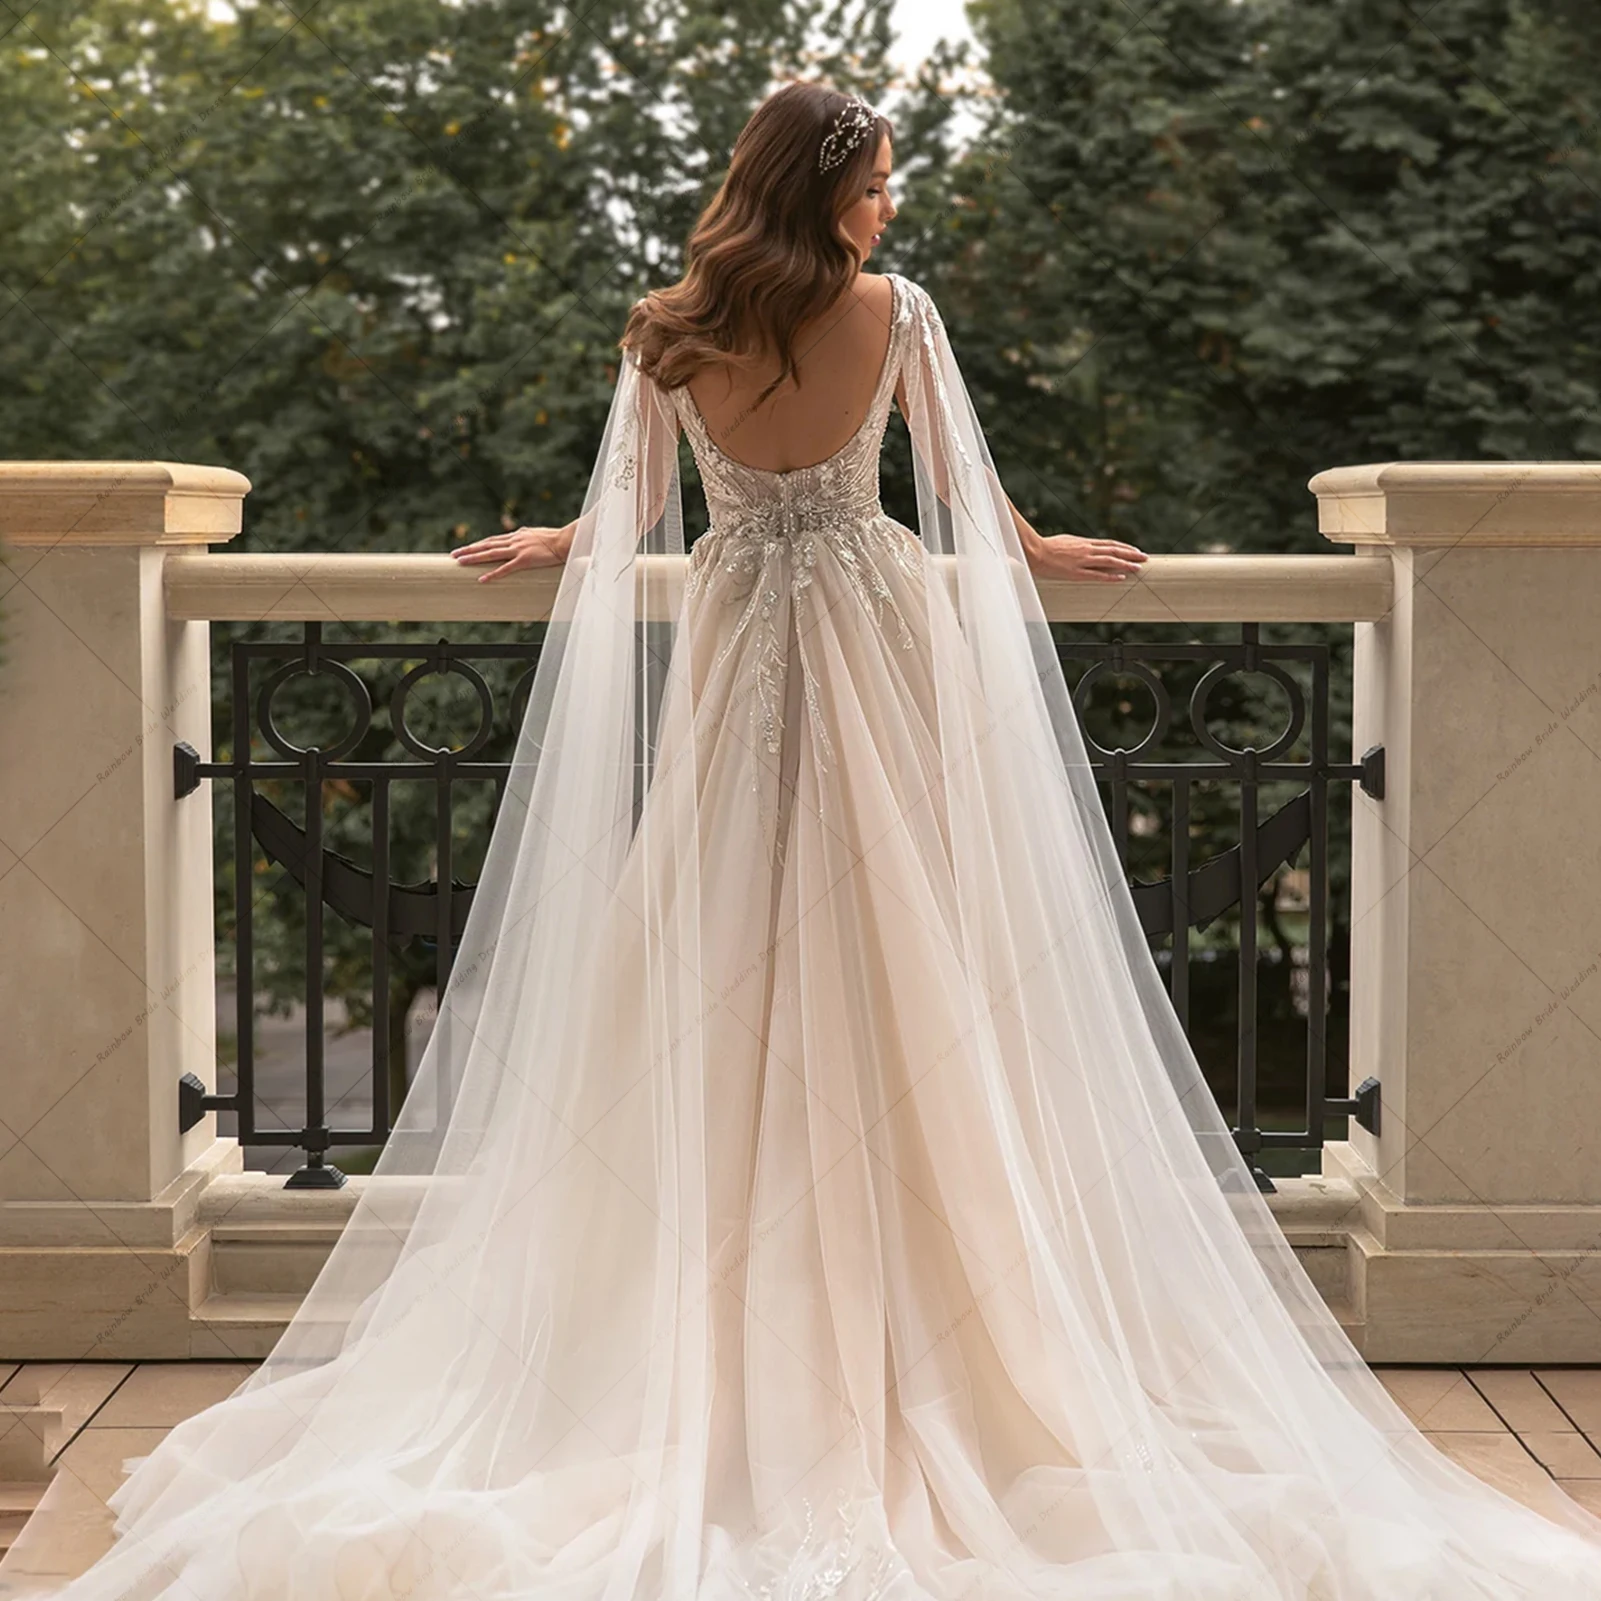 Parlak Kristal Aplike düğün elbisesi Gelin İçin Seksi Sheer Boyun Tren Aç Geri gelin kıyafeti Fermuar Yan Yarık Vestido De Noiva - 1